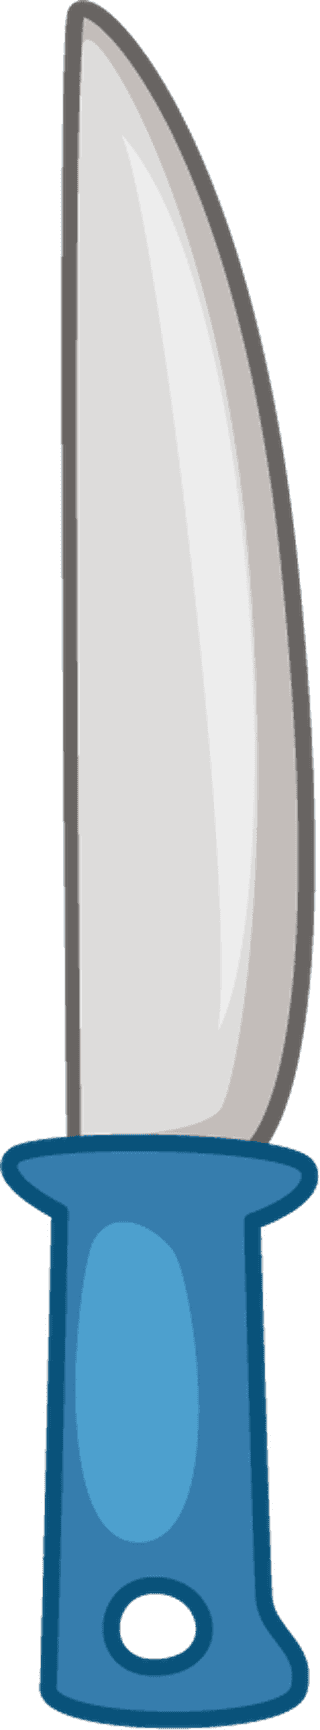 cutterkitchen-utensils-illustration-931442